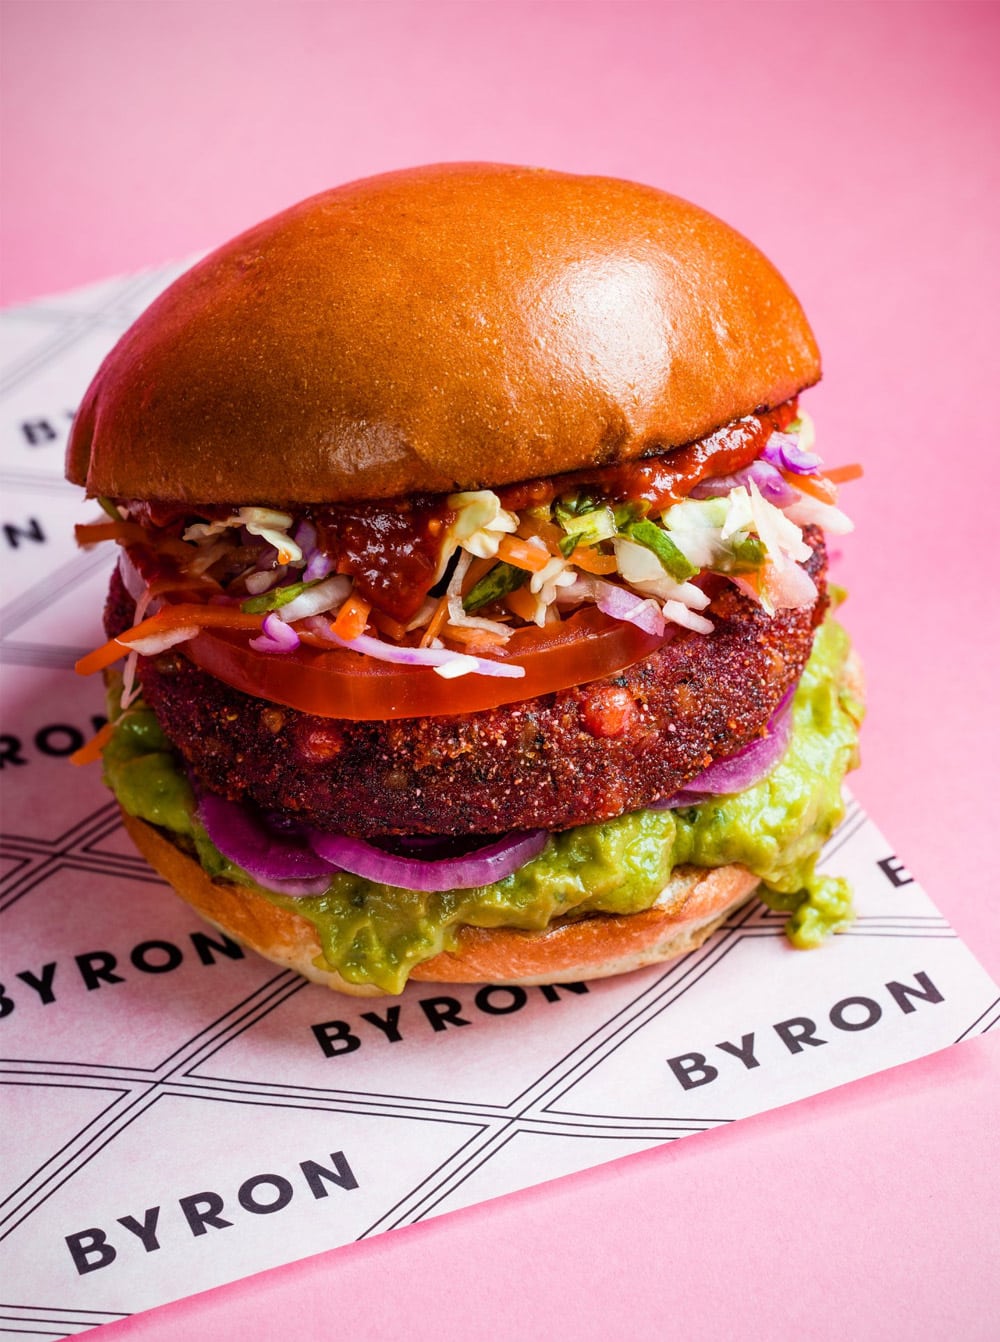 英國知名漢堡連鎖品牌Byron 啟用新LOGO 2